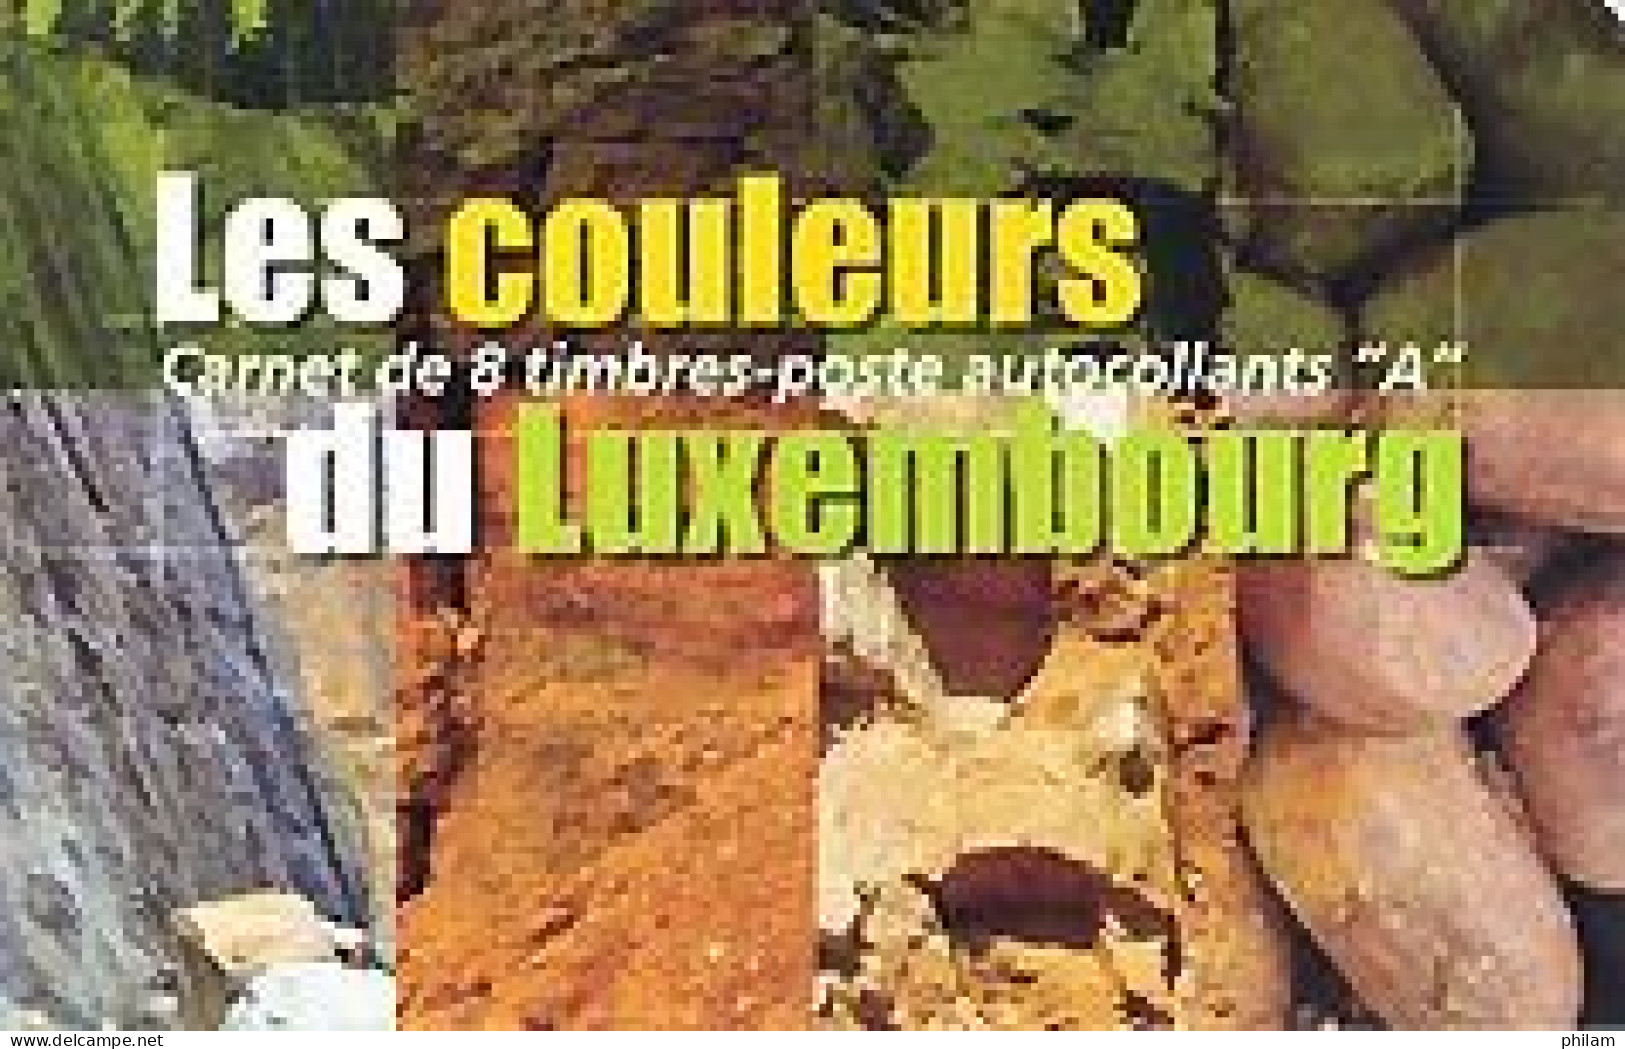 LUXEMBOURG 2005 - Couleurs Du Luxembourg: Minéraux - 1 Carnet - Minerales